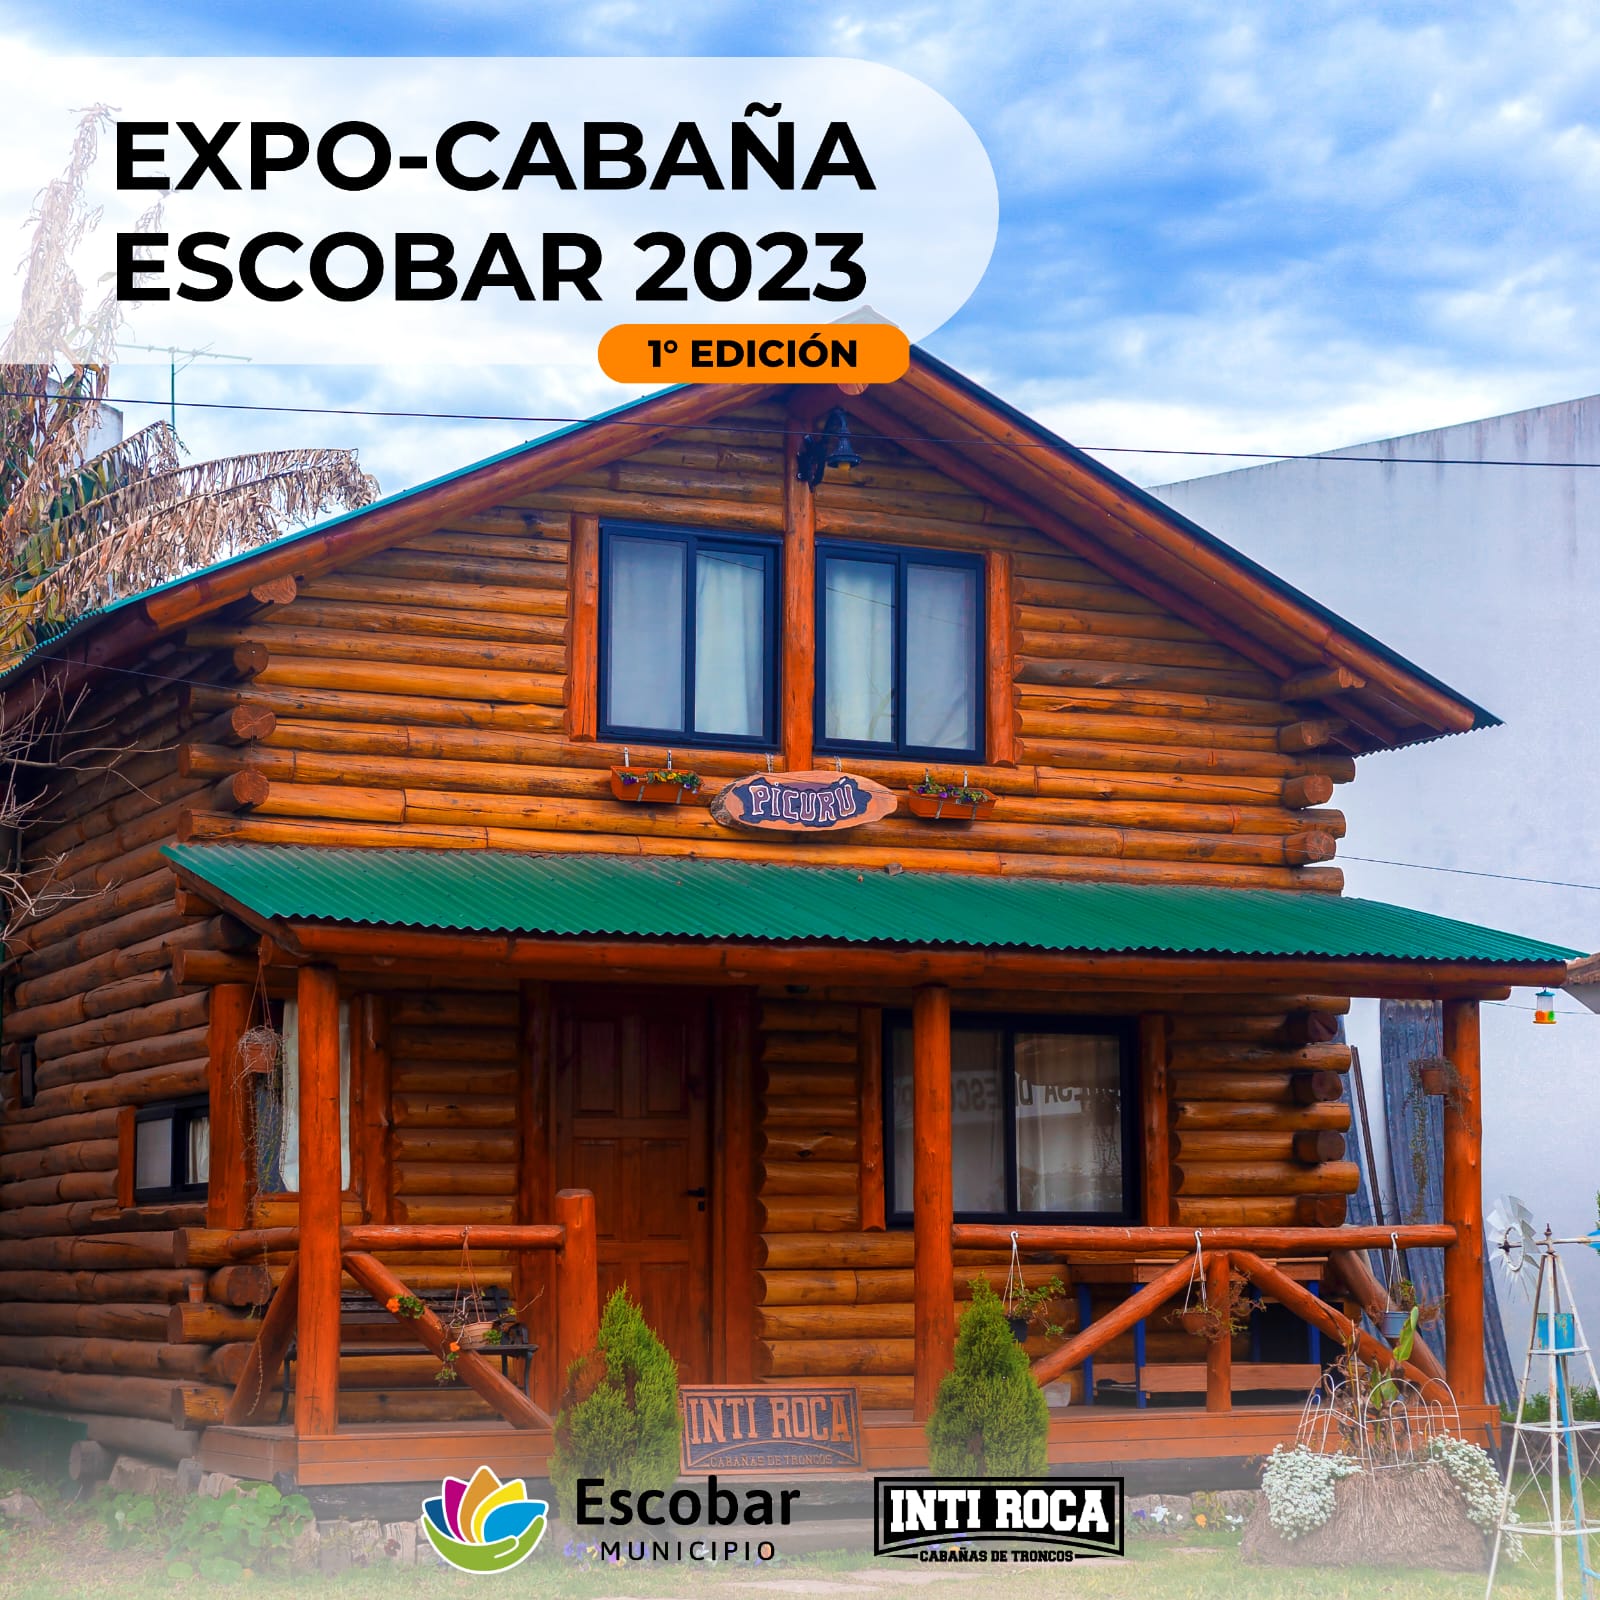 Llega a Escobar “Expo Cabaña” el primer encuentro sobre construcción de cabañas de troncos del país